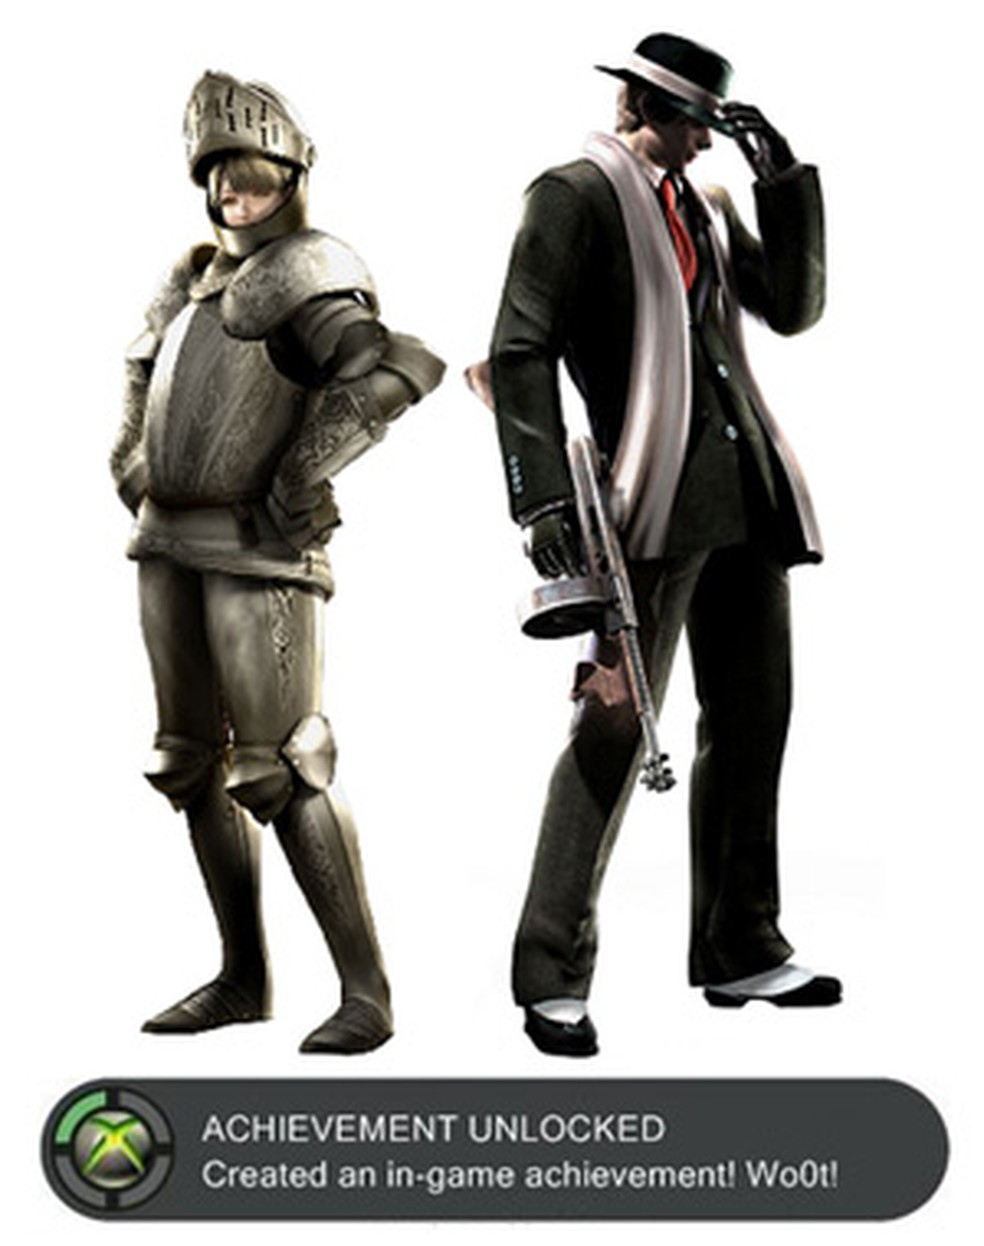 Capcom revela novos trajes da versão Deluxe de Resident Evil 4